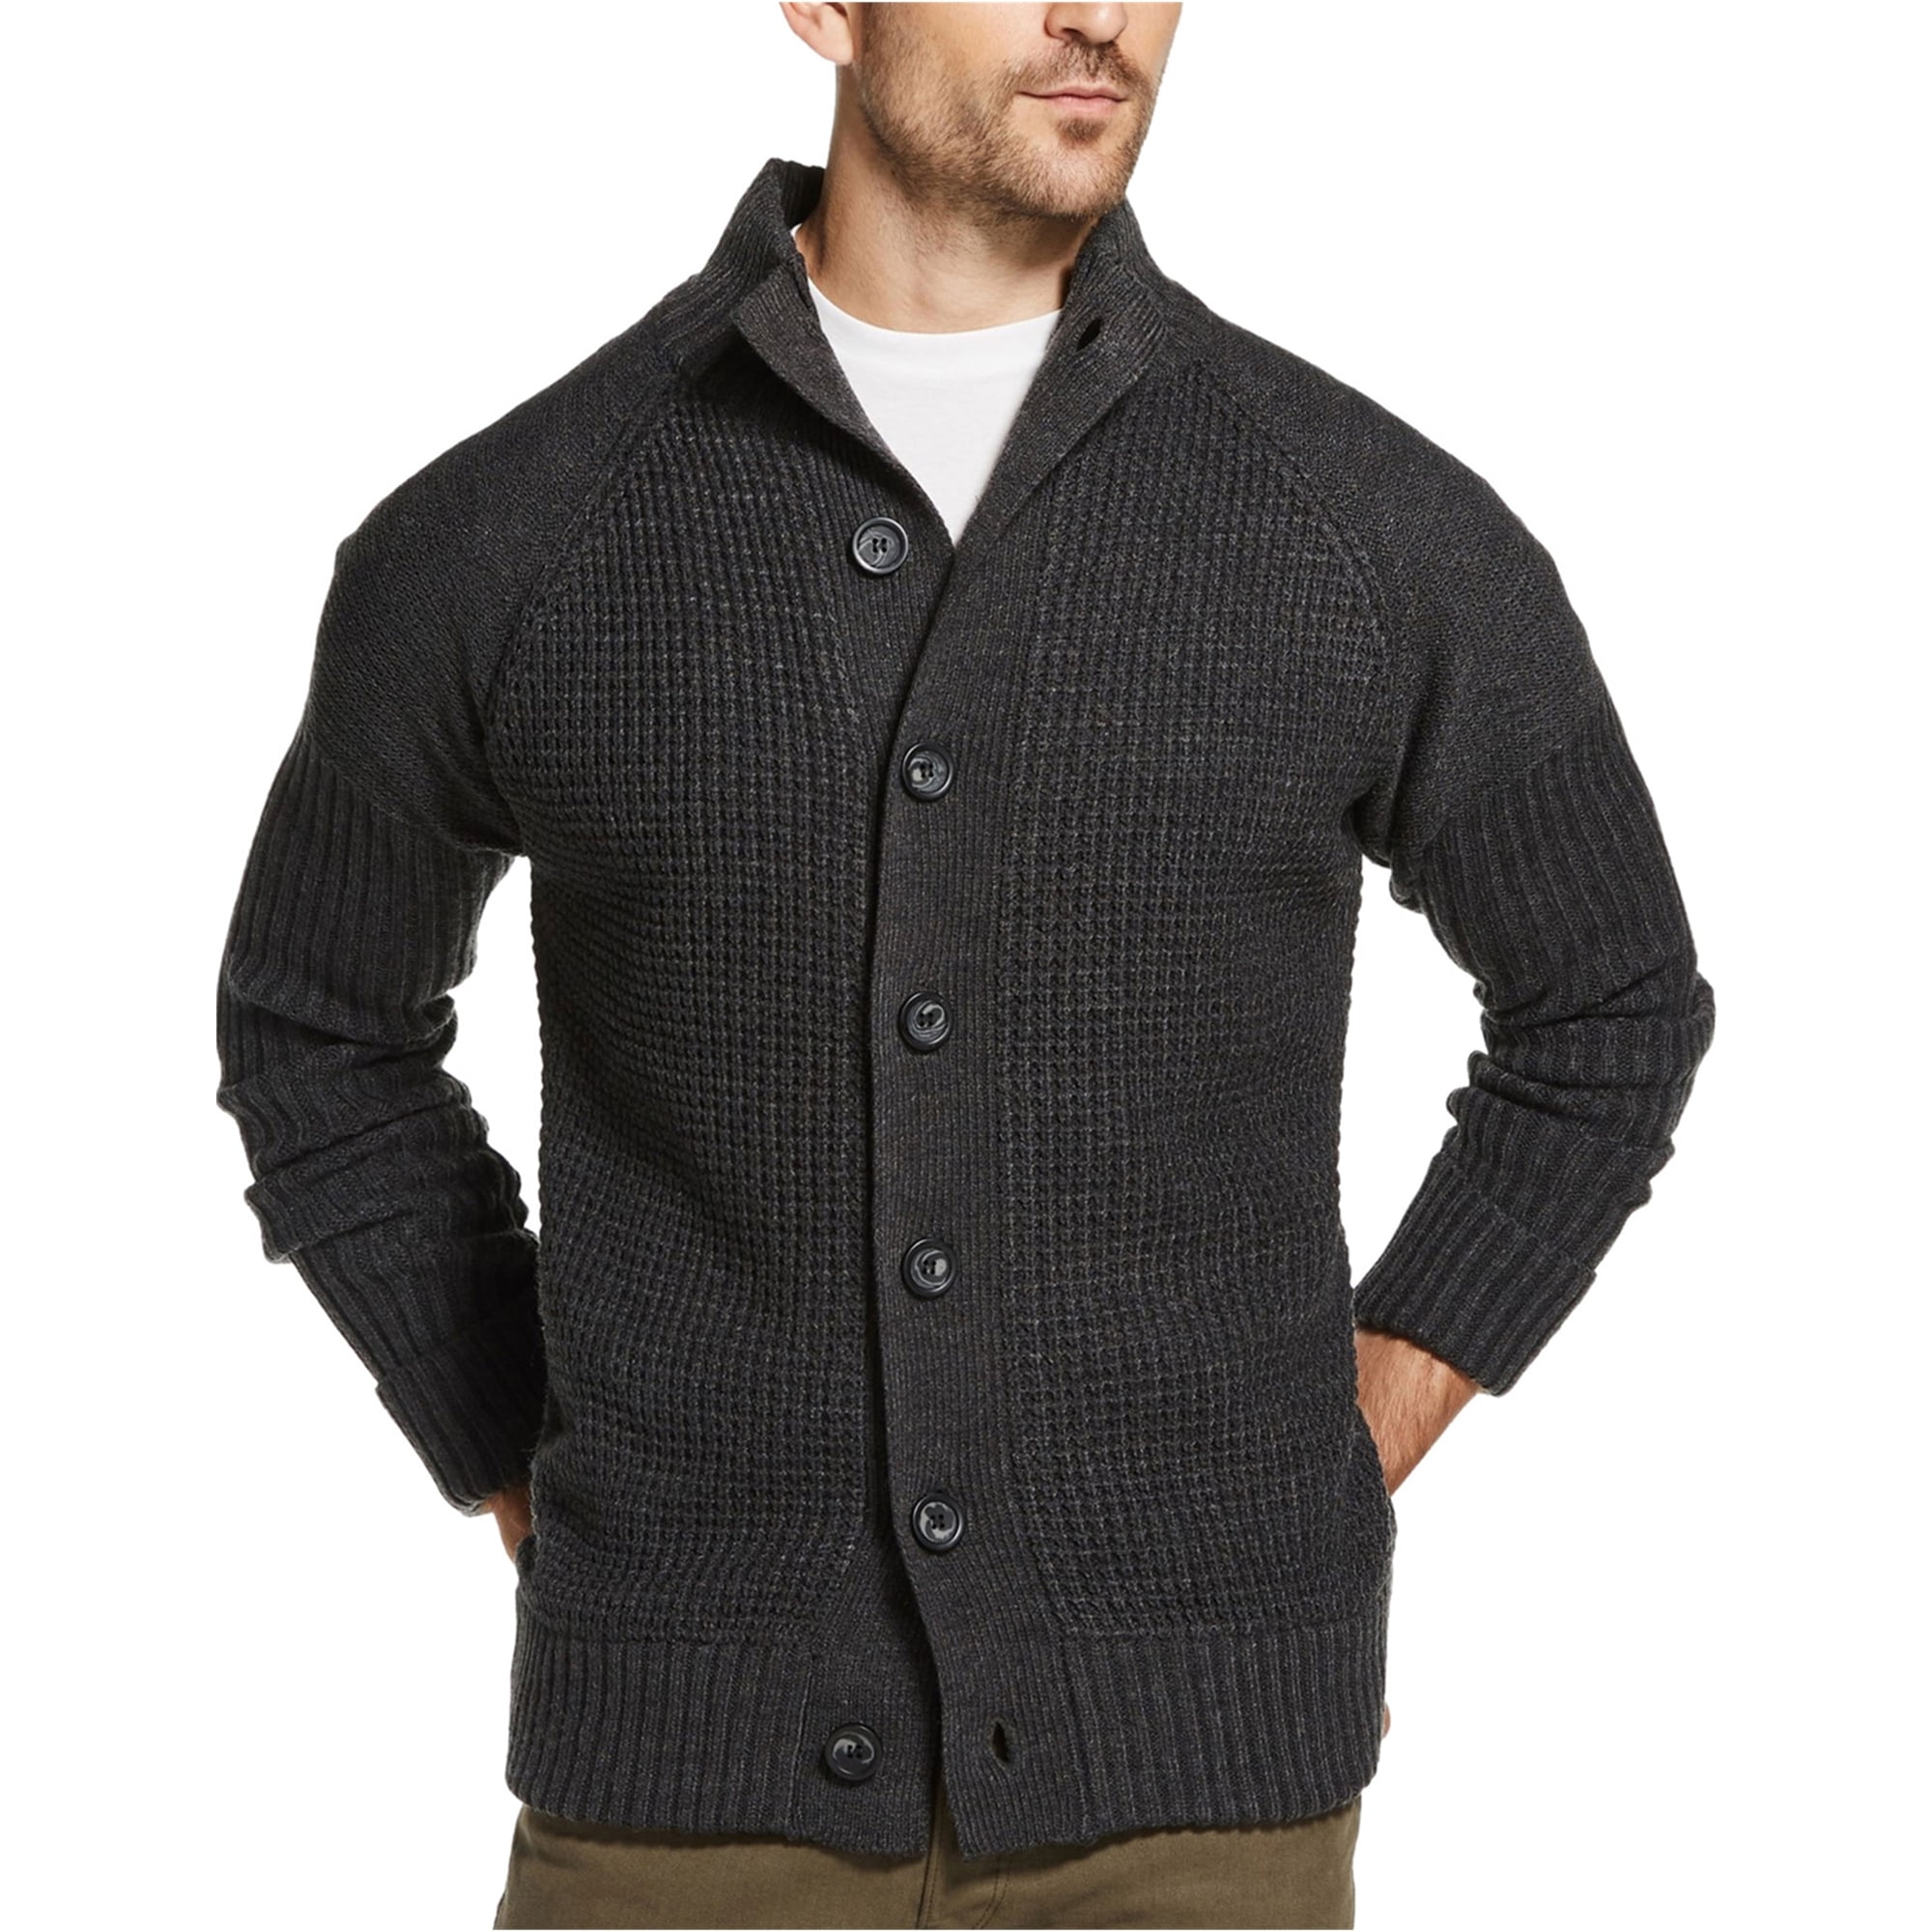 Weatherproof - Weatherproof Mens Waffle-Stitch Cardigan Sweater ...